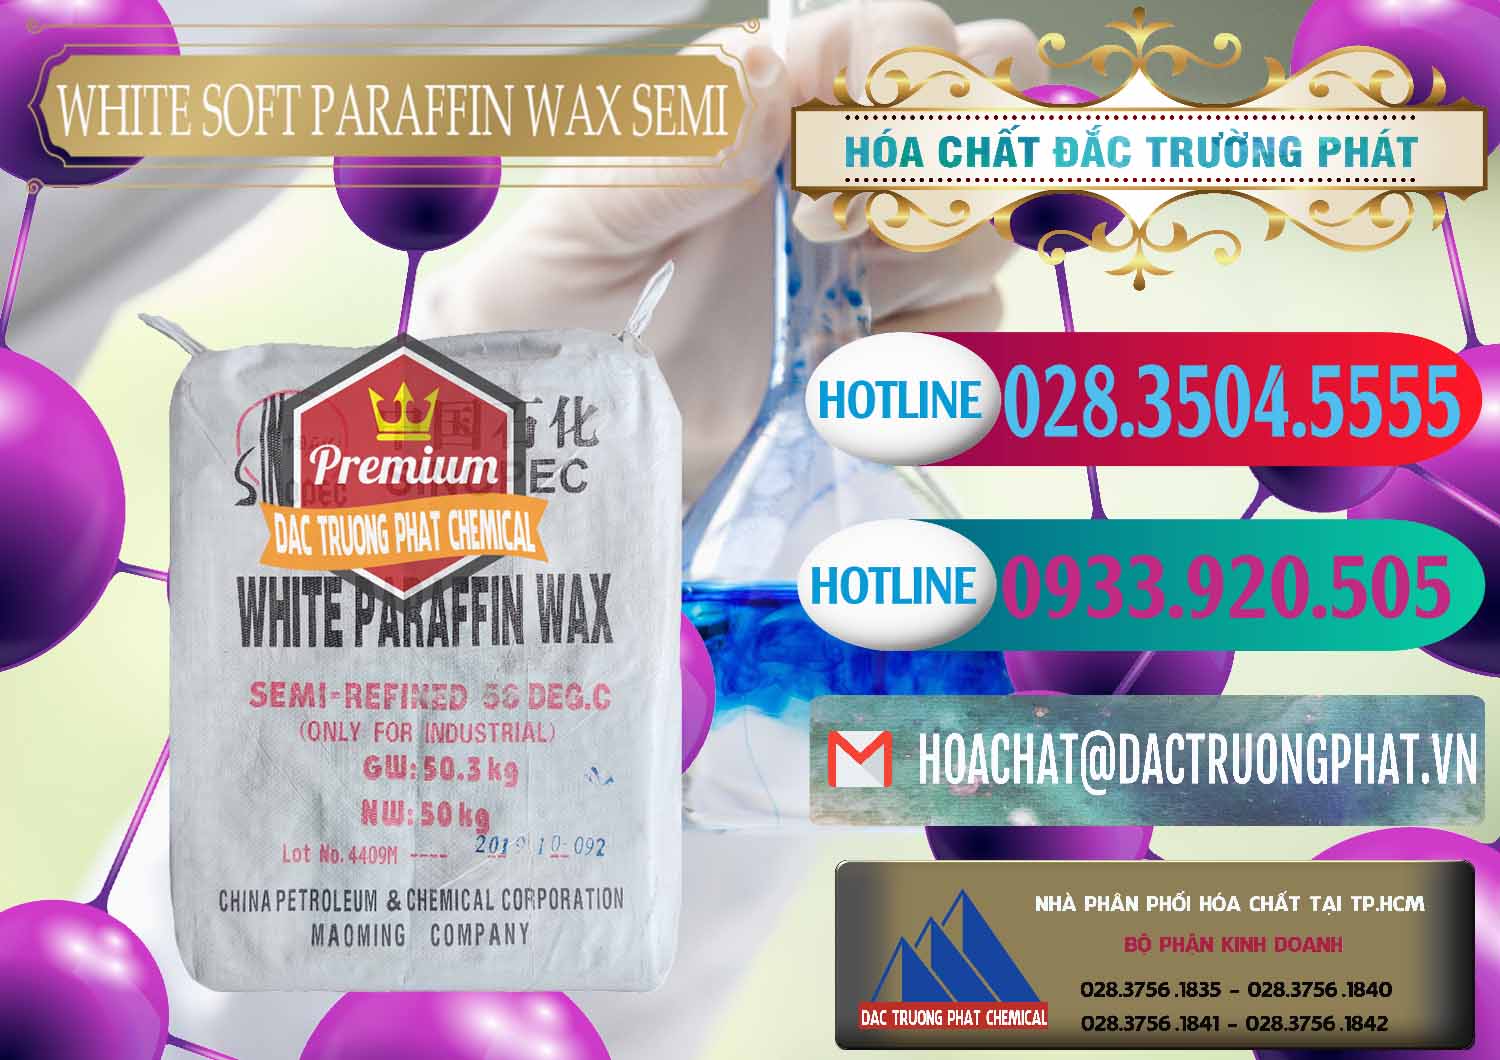 Cty chuyên bán và phân phối Sáp Paraffin Wax Sinopec Trung Quốc China - 0328 - Đơn vị cung cấp ( nhập khẩu ) hóa chất tại TP.HCM - truongphat.vn